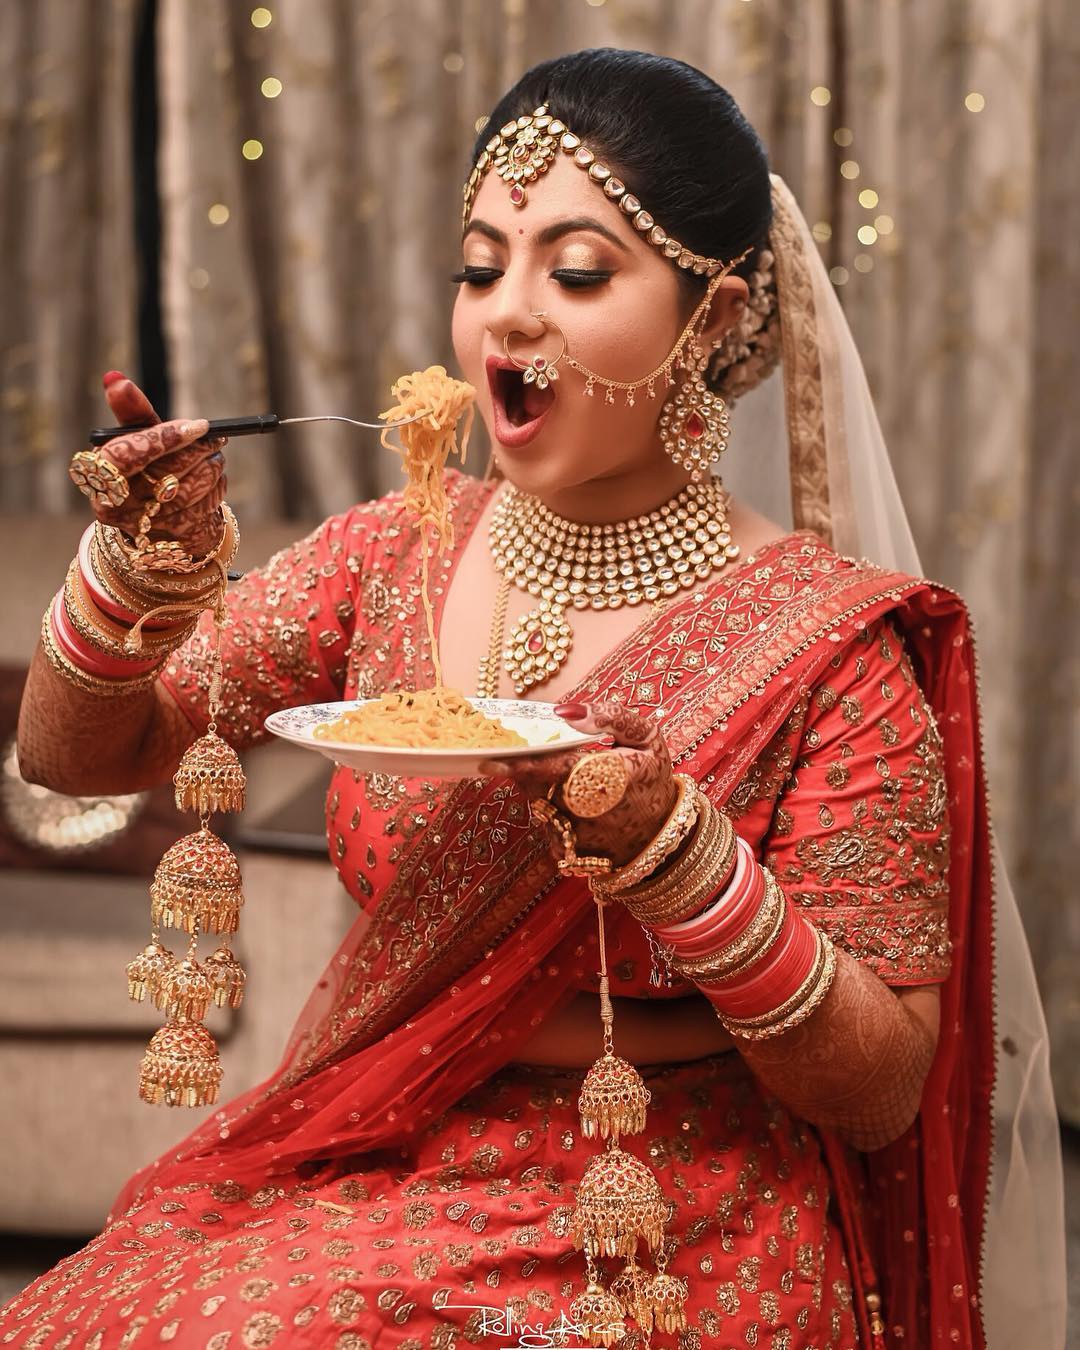 Wedding sari hi-res stock photography and images - Alamy